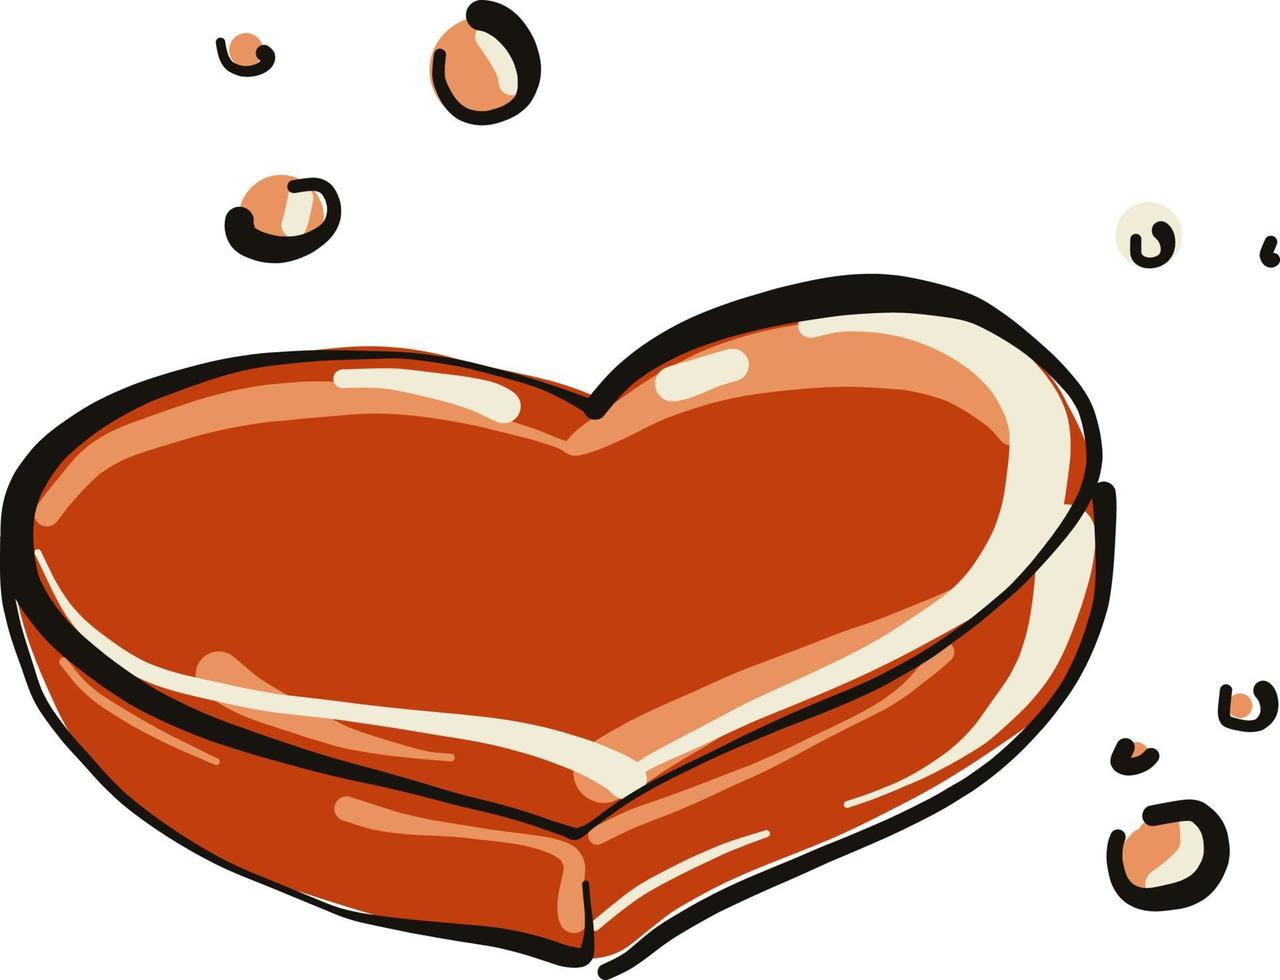 Heart soap, illustration, vector on white background.